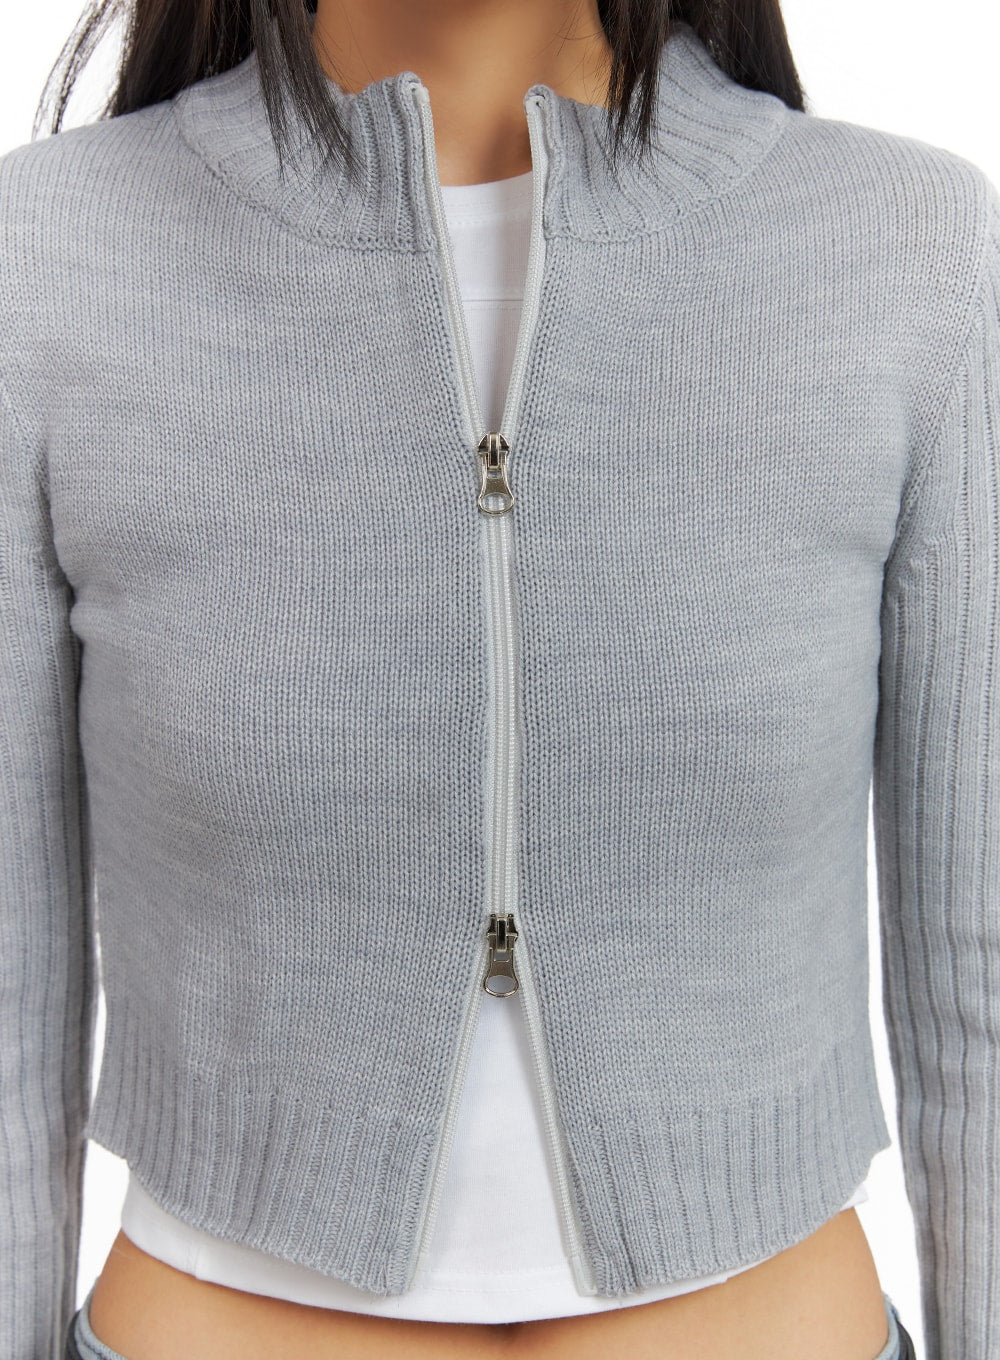 crop-zip-up-mock-neck-sweater-ia417